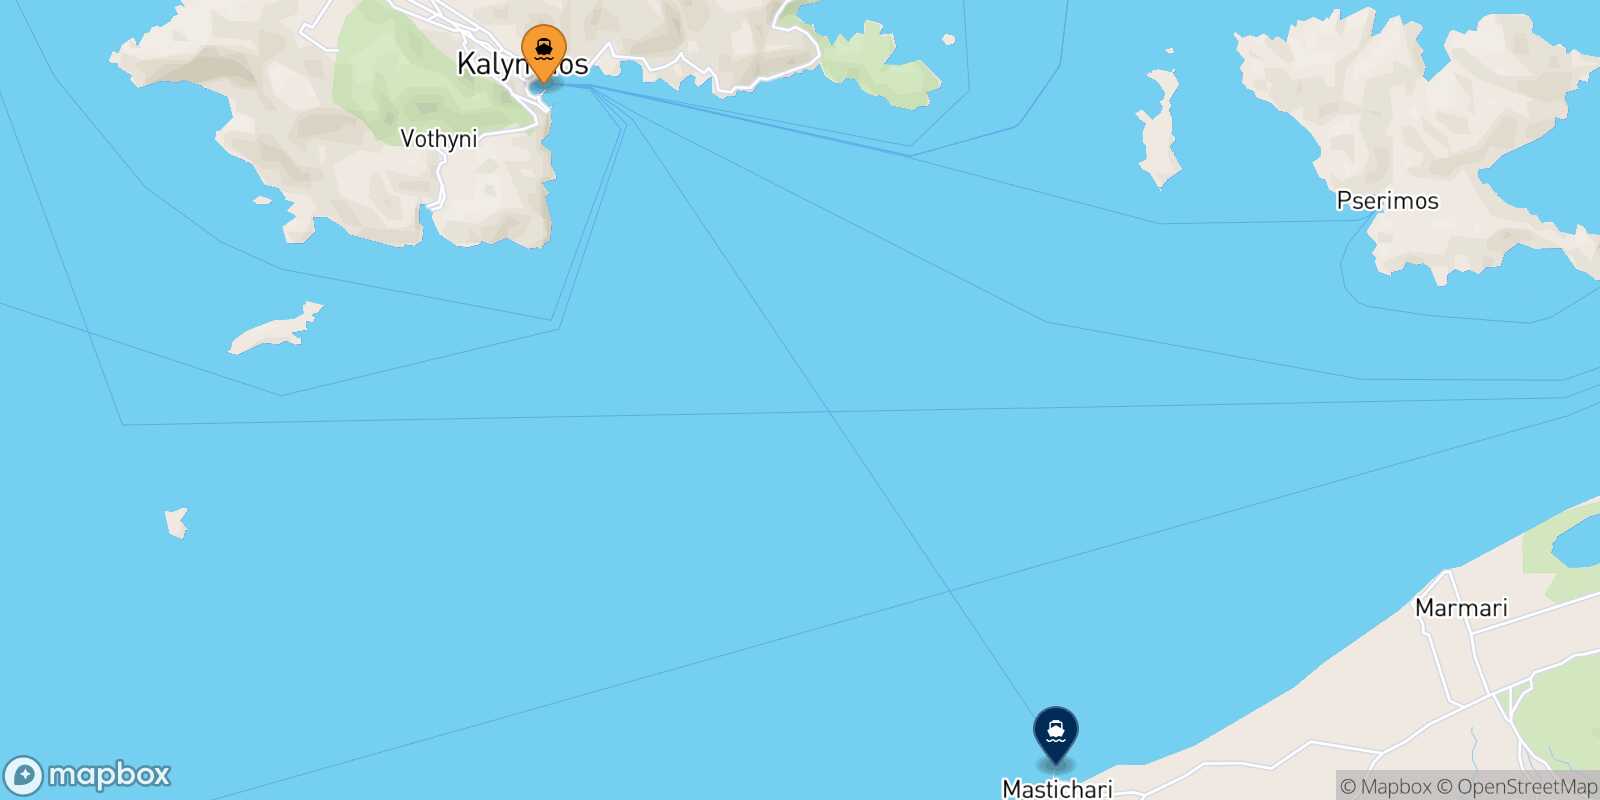 Mapa de la ruta Kalymnos Pserimos